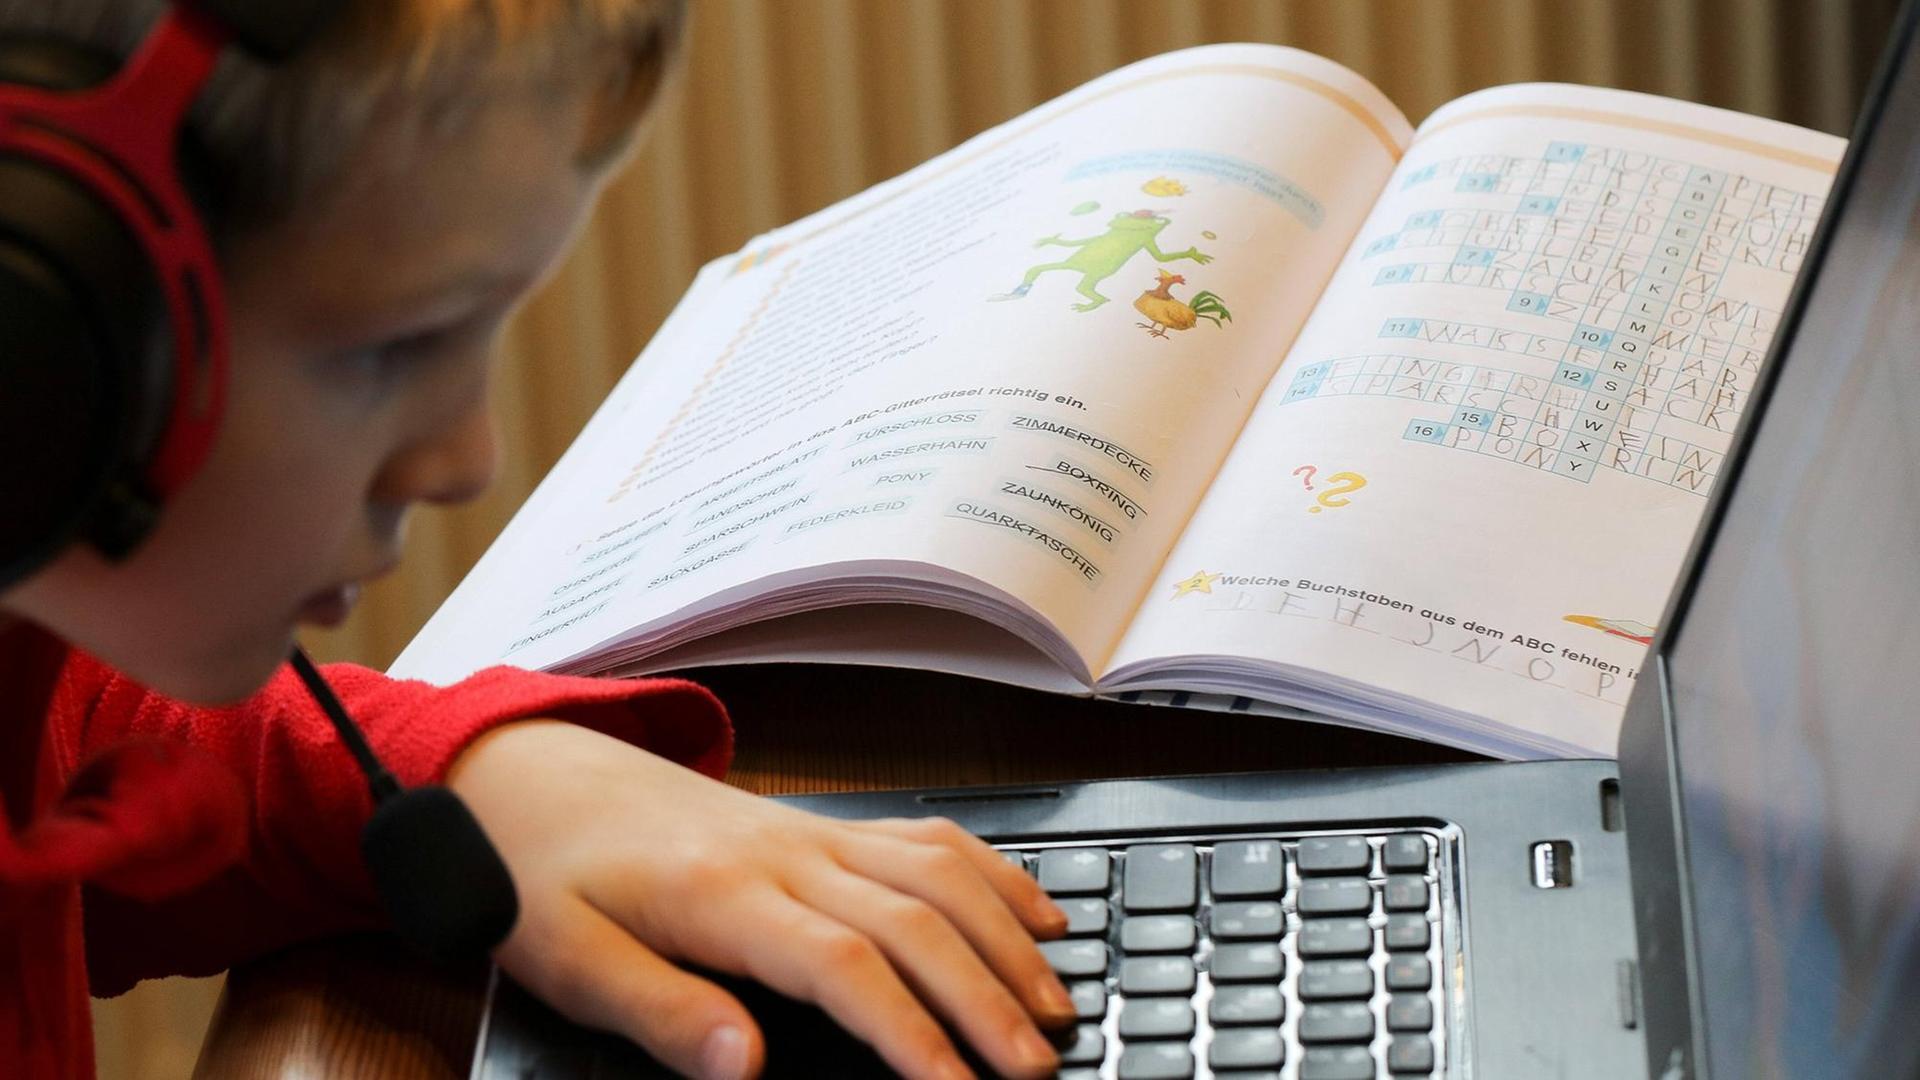 Eine Junge sitzt vor einem aufgeklappten Laptop mit Kopfhörern und Mikrofon und macht Homeschooling. Auf dem Tisch liegen verschiedene Schulbücher.